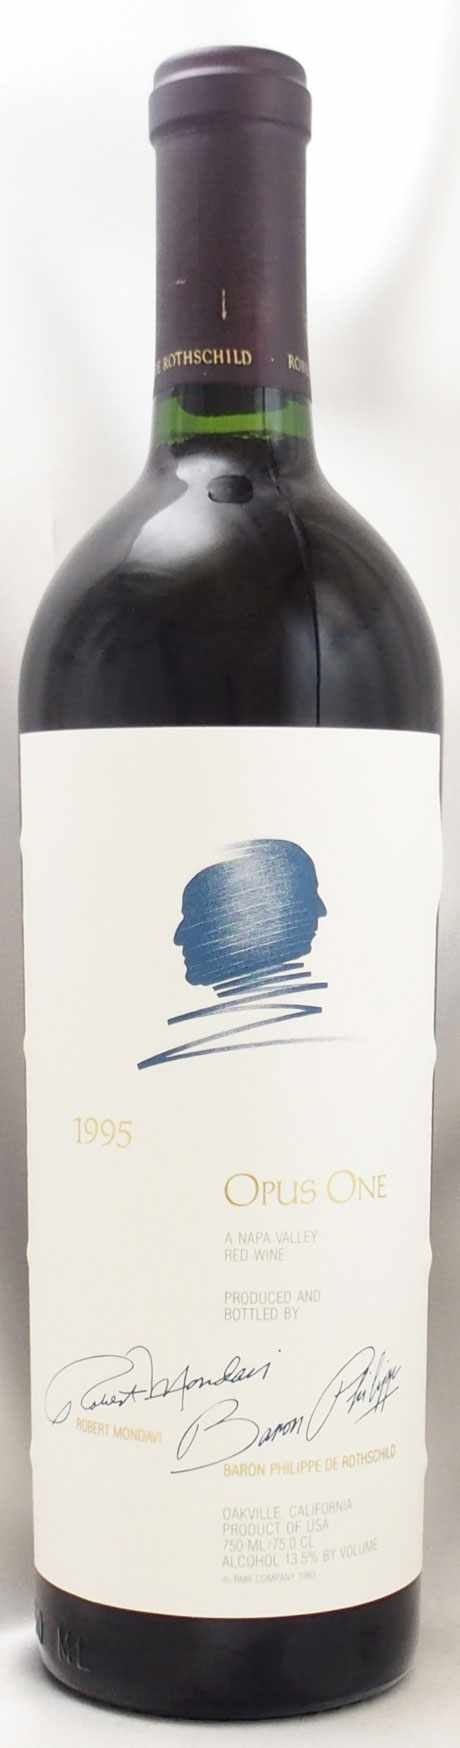 1995年 オーパス ワン モンダヴィ・ロッチルドOPUS ONE MONDAVI  ROTHSCHILDの販売[ヴィンテージワイン専門店のNengou-wine.com]